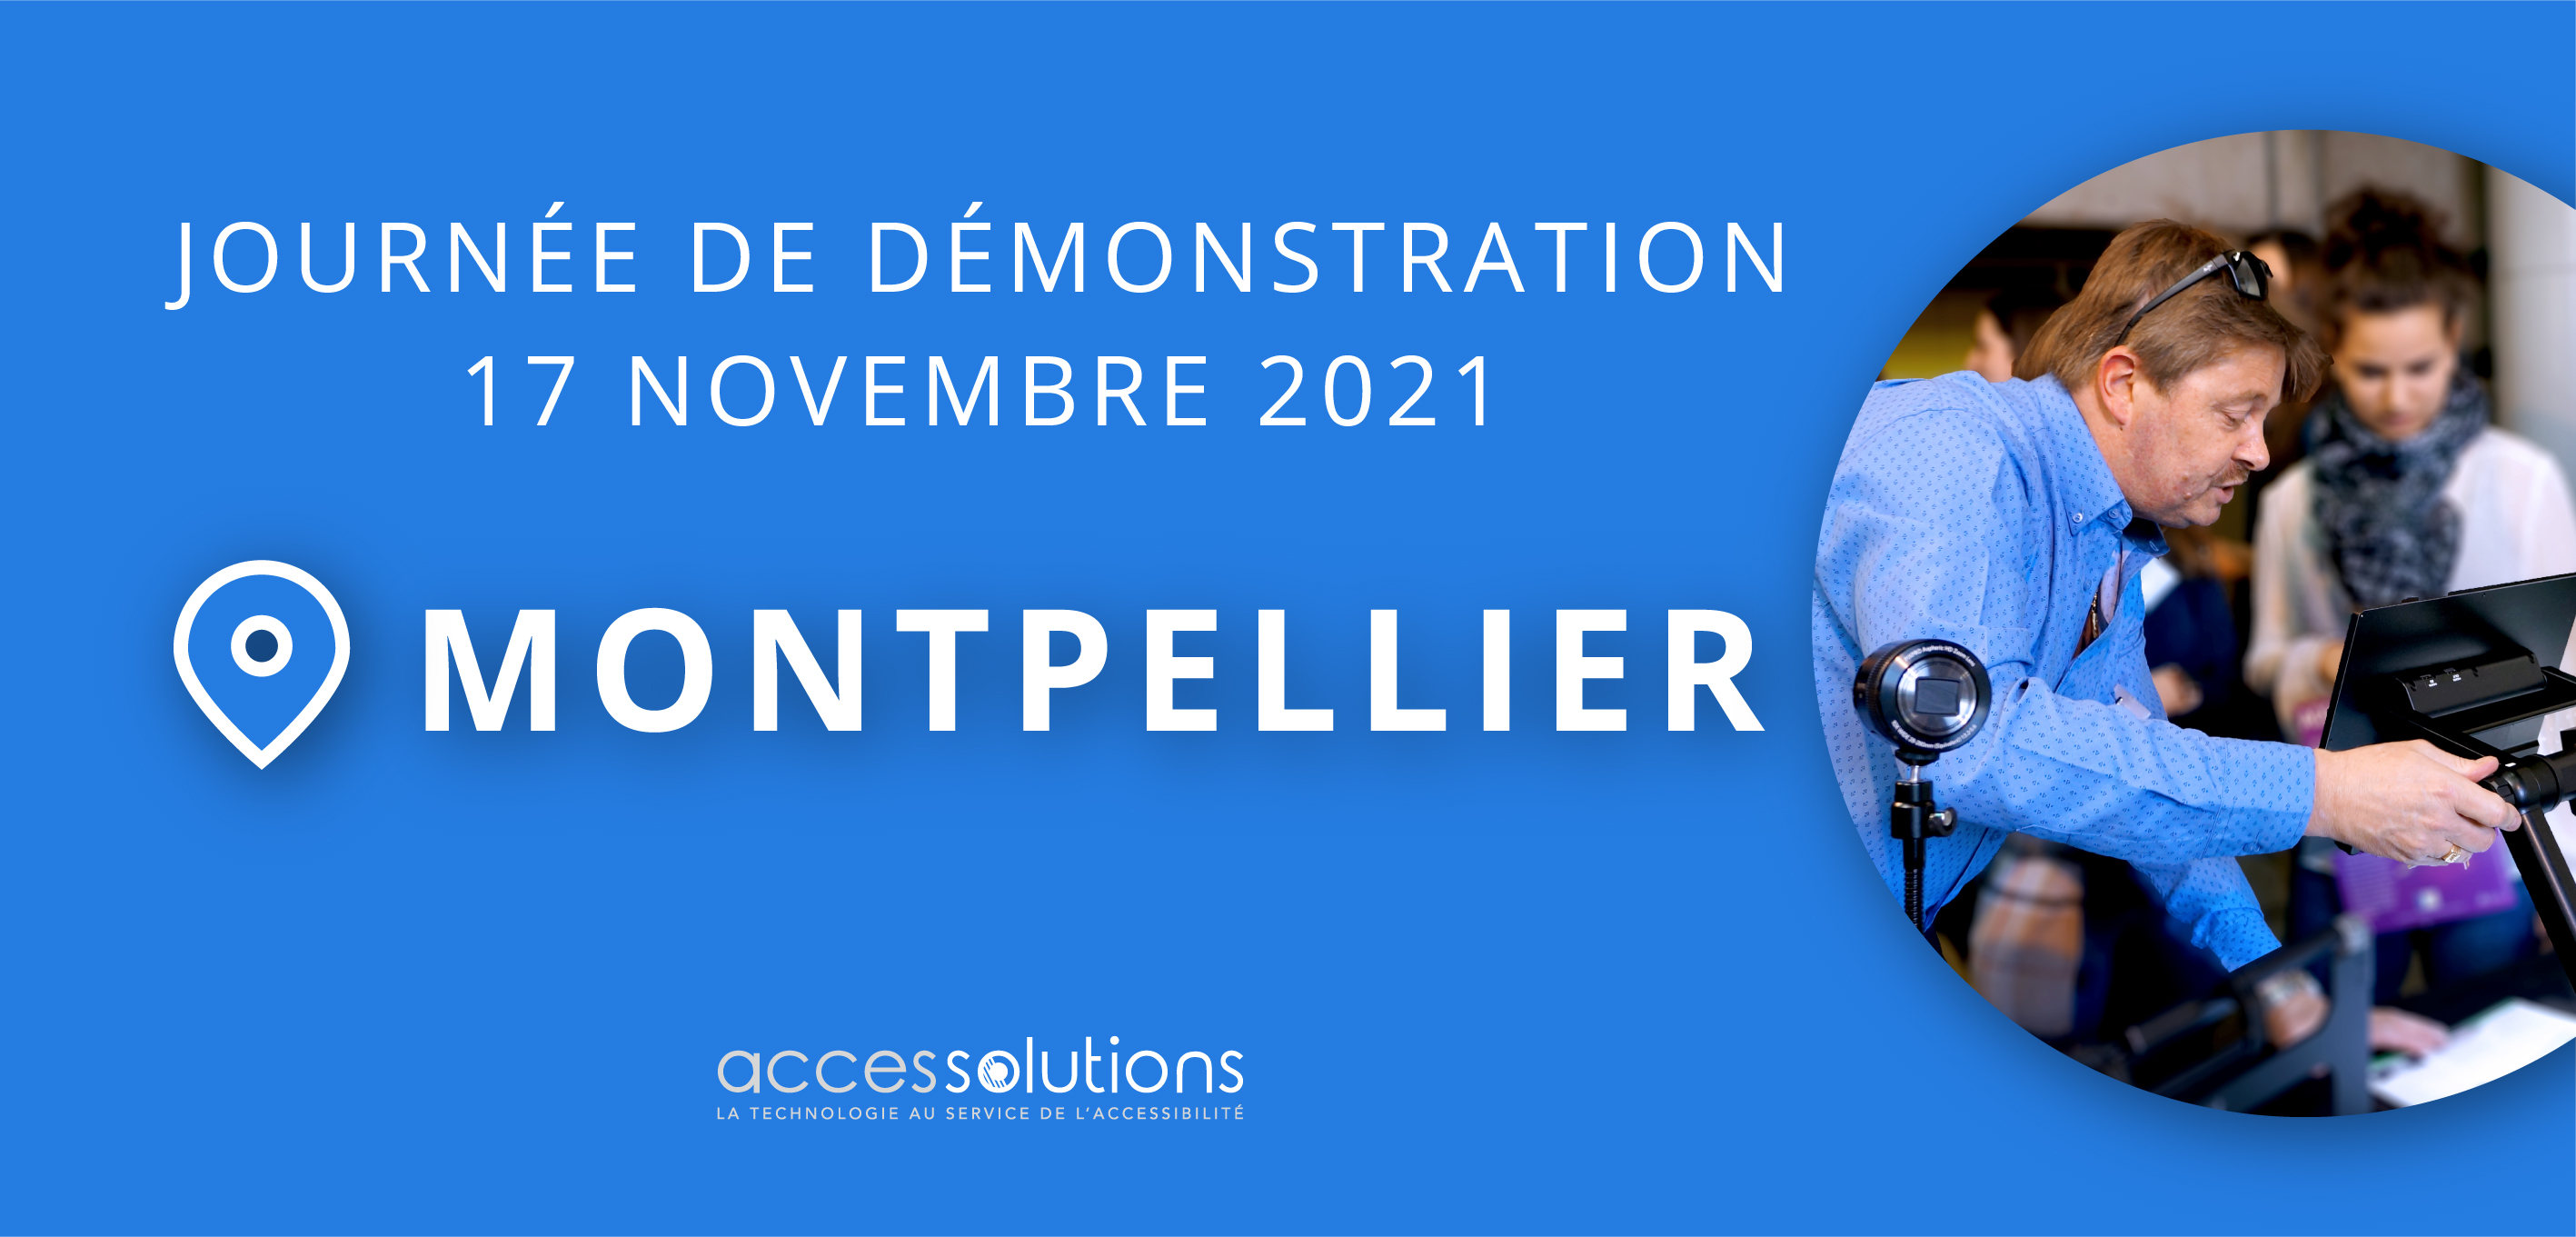 Journée de démonstration à Montpellier